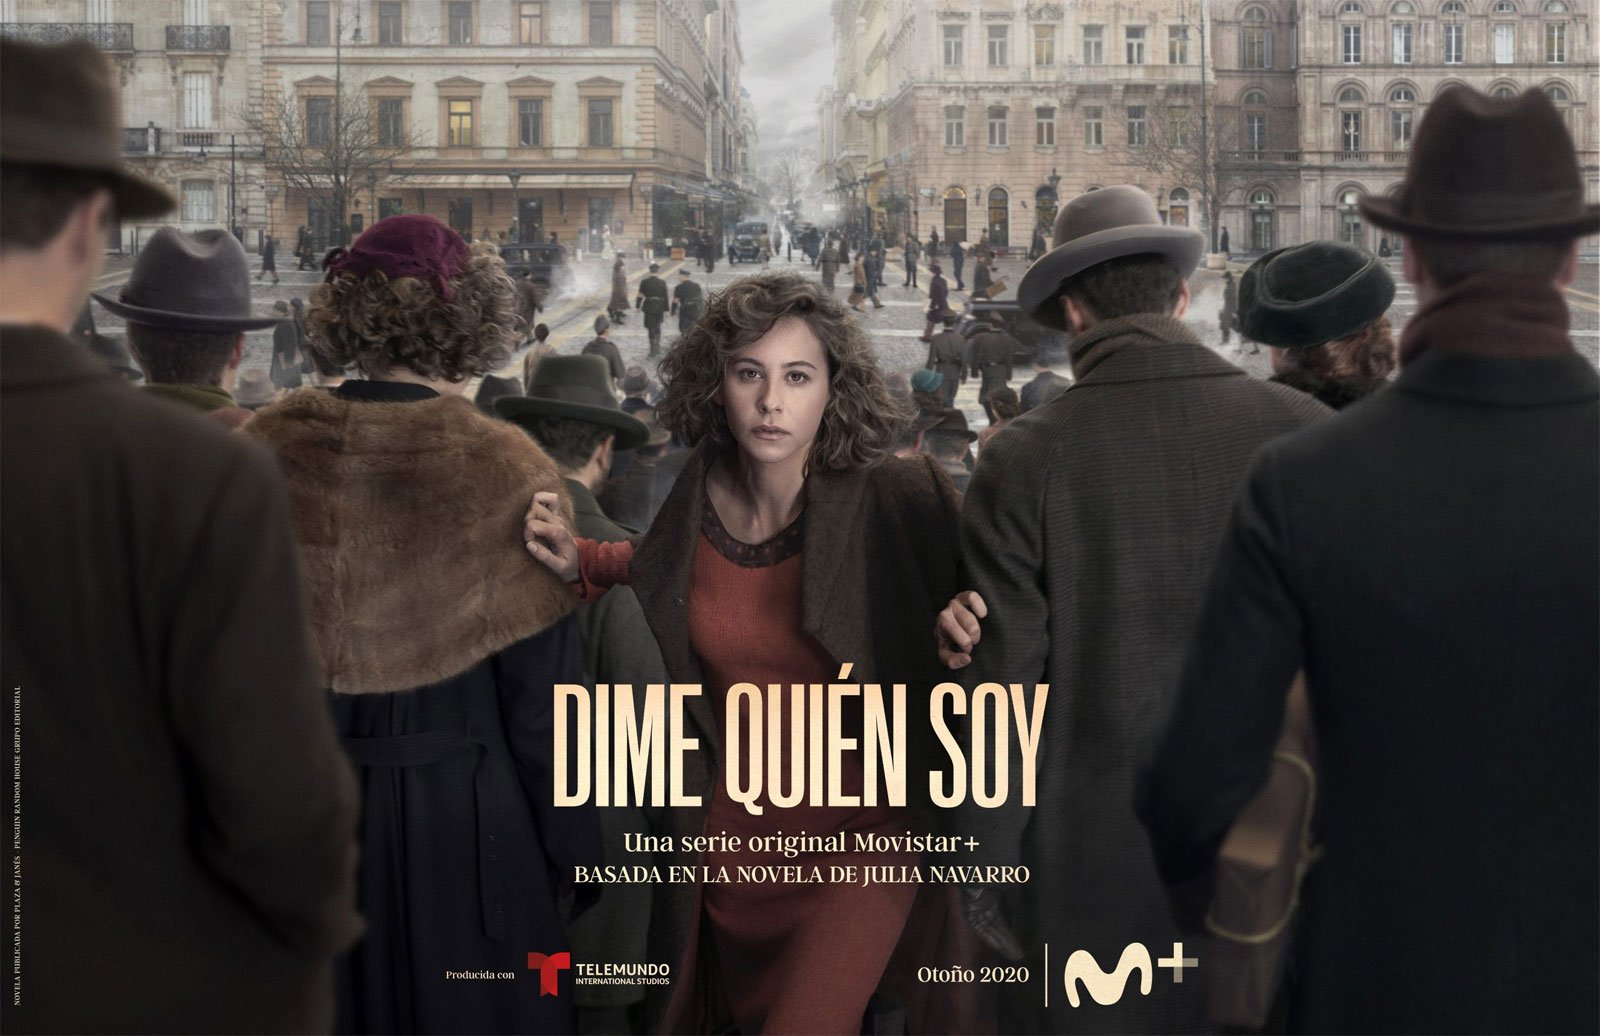 [心得] 告訴我我是誰 Dime quién soy (雷) Movistar+ 西班牙時代劇